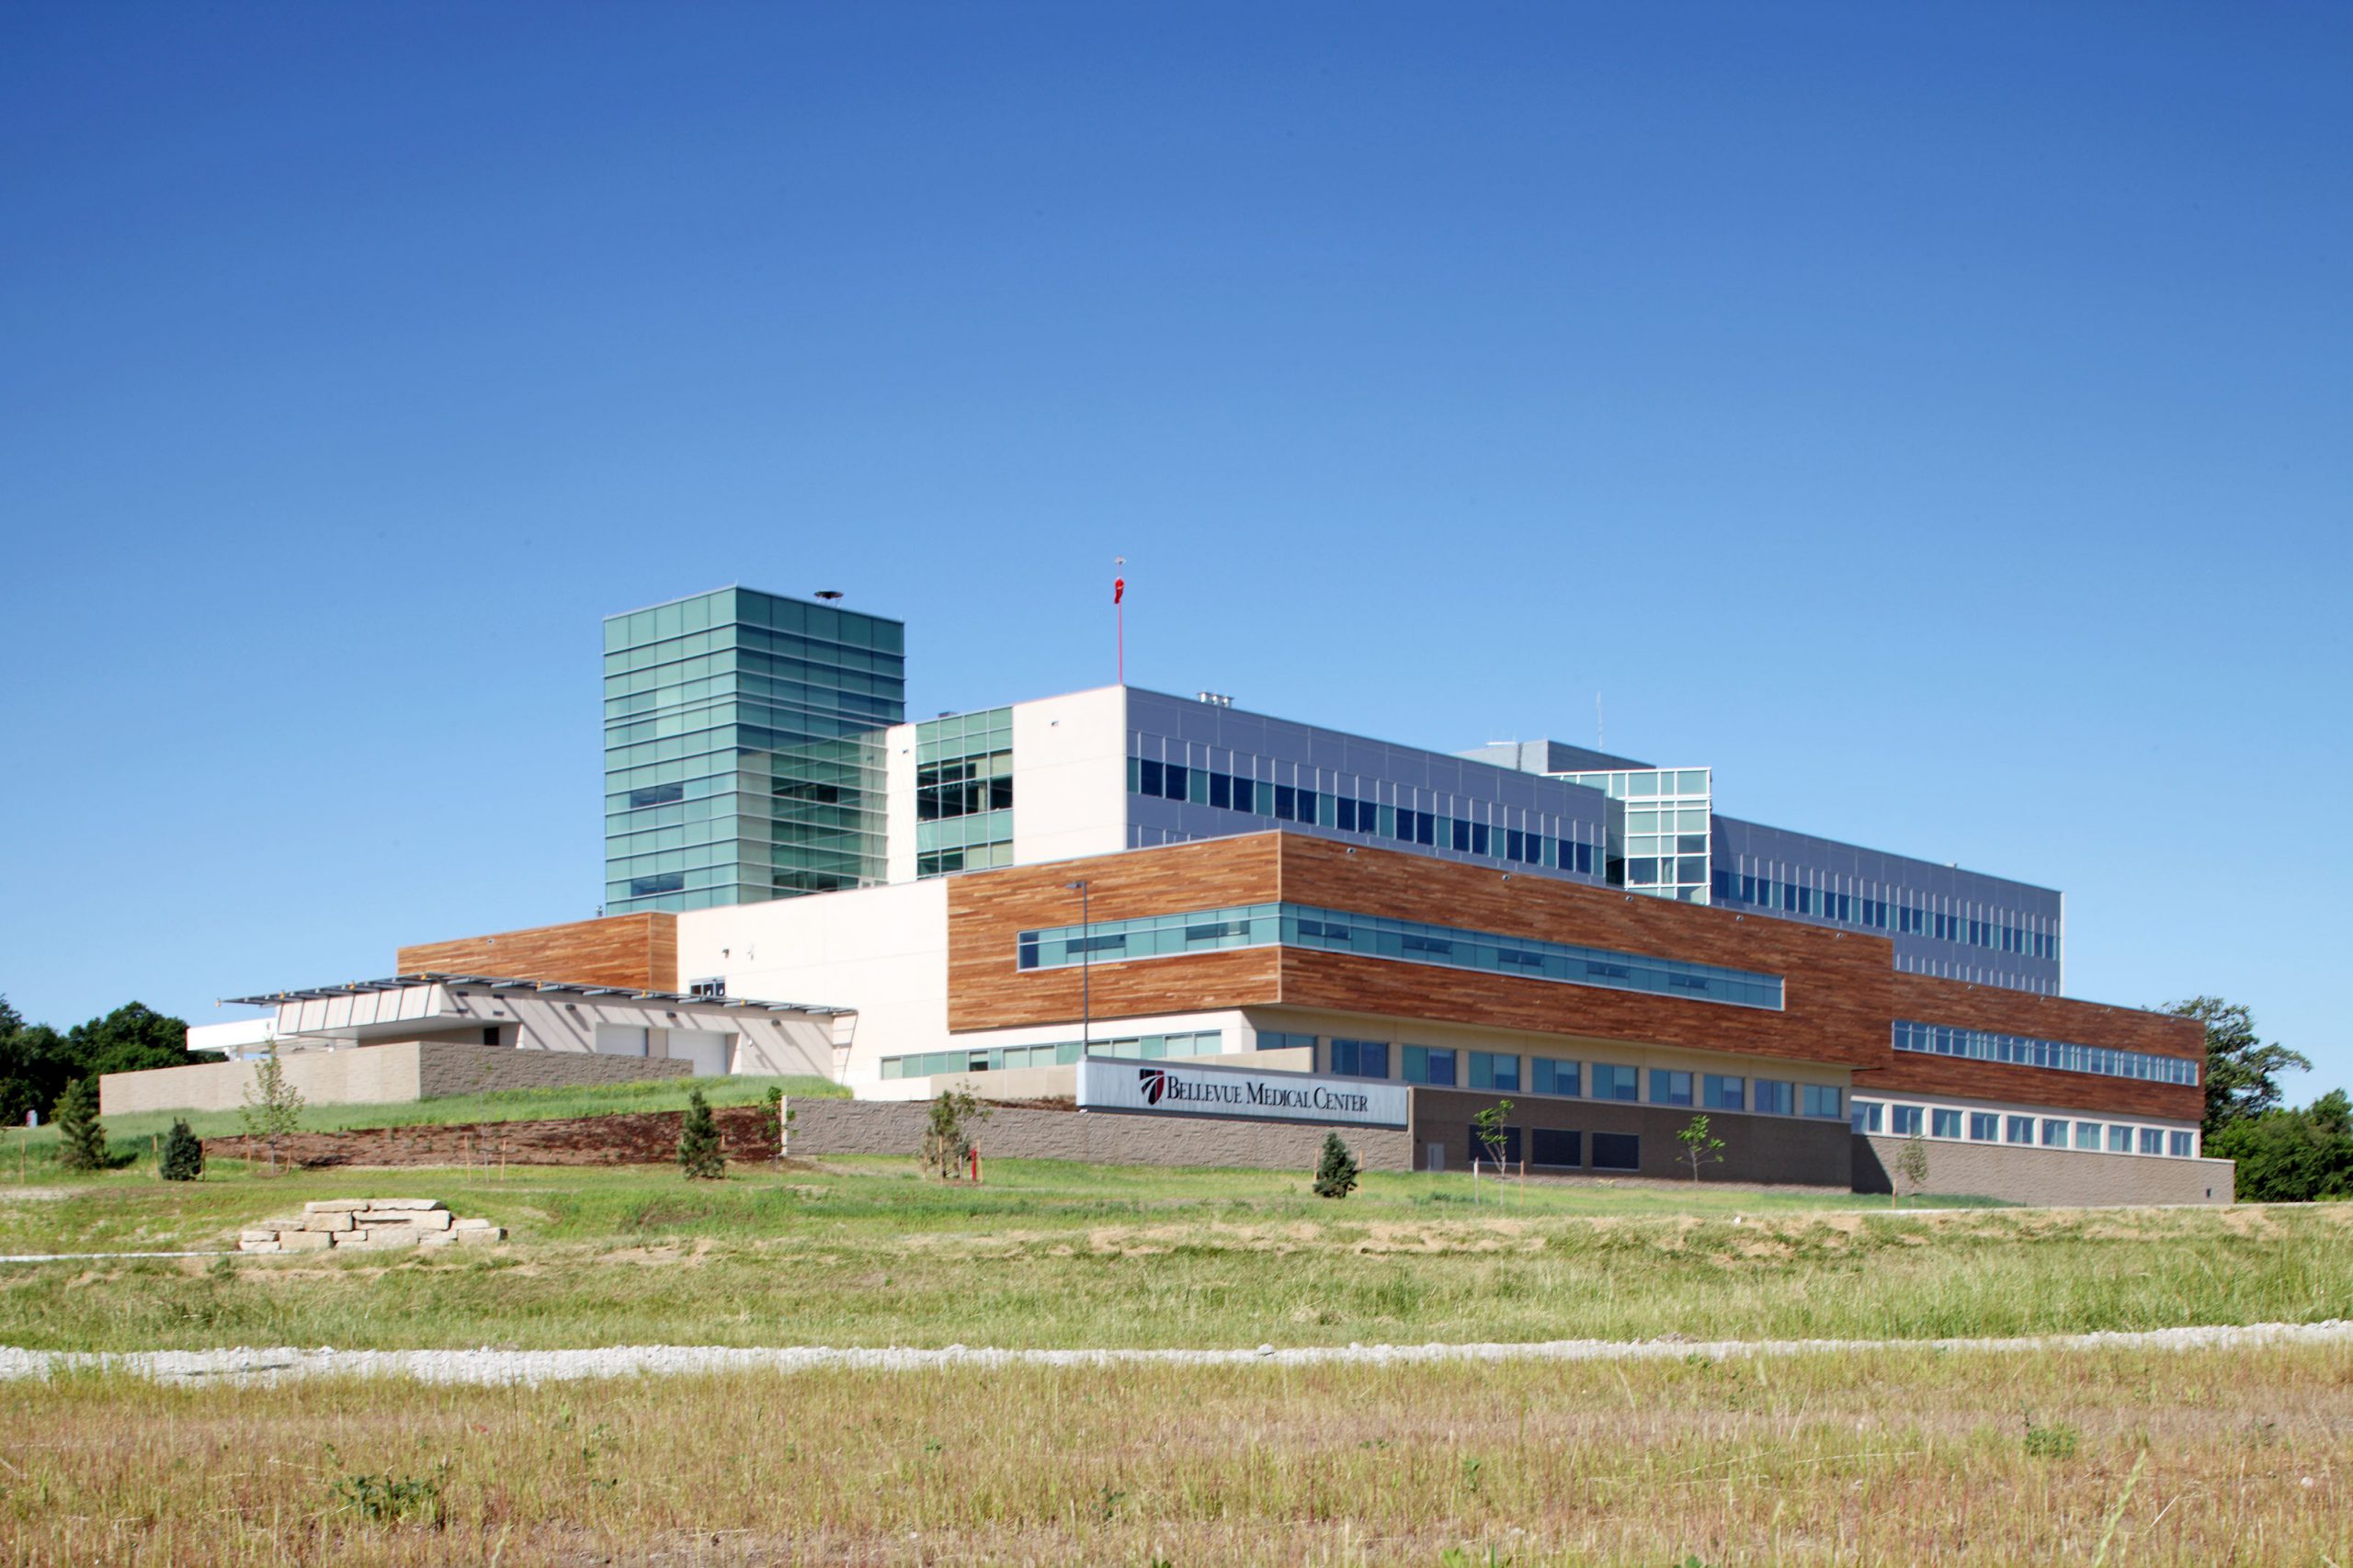 Nebraska Medicine - Bellevue Medical Center